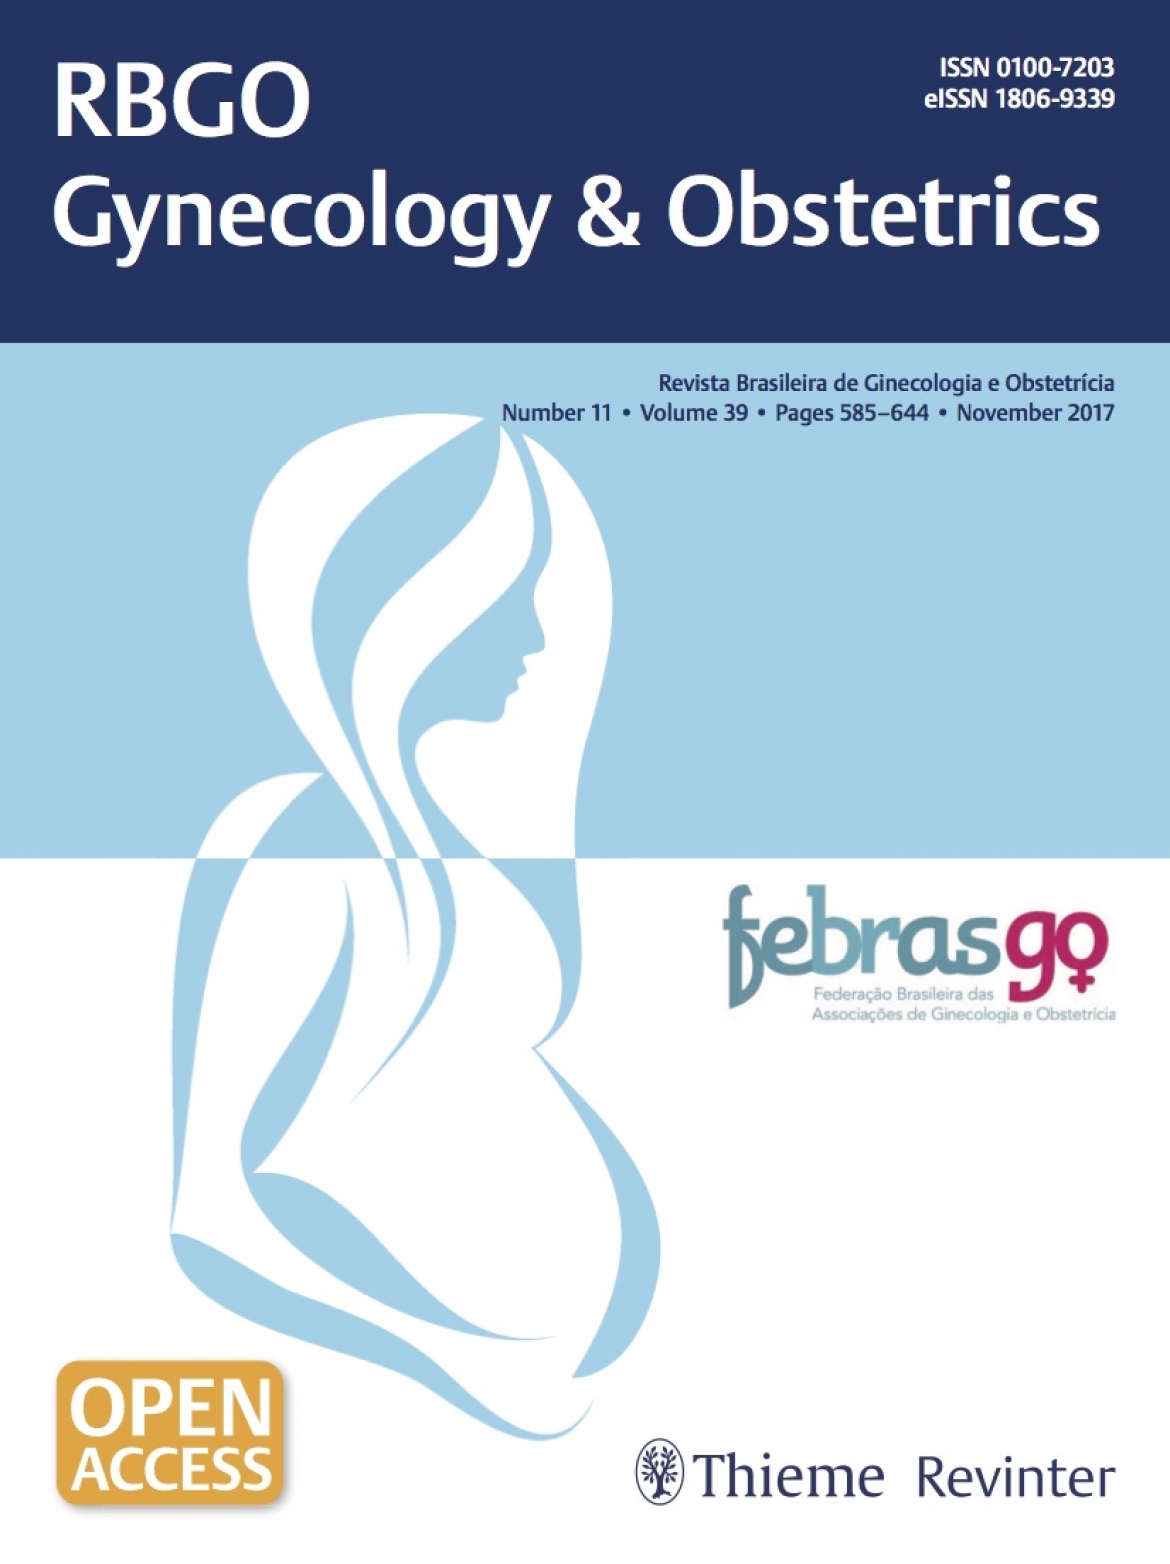 Revista Brasileira de Ginecologia e Obstetrícia – 2017 / Vol. 39 n°11